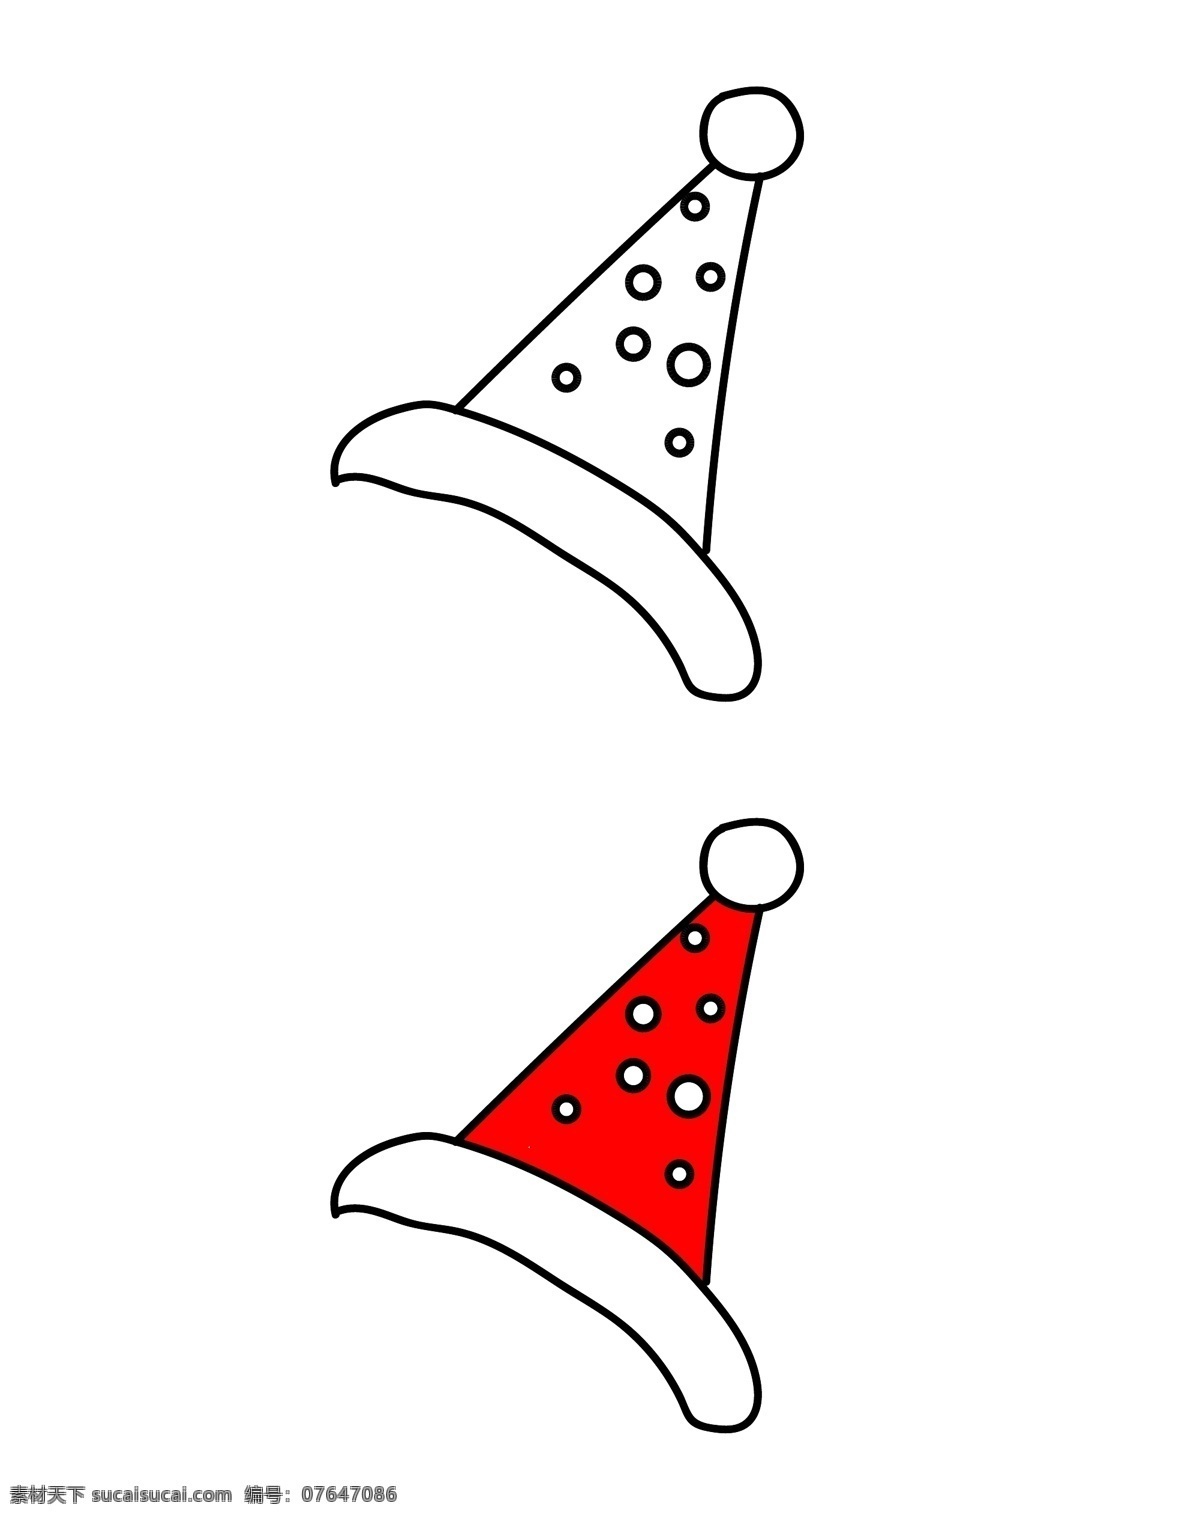 生日帽 圣诞帽 冬季帽子 棉帽 红帽 红色帽子 帽子 生活用品 圣诞节素材 海报素材 简笔画帽子 简笔画圣诞帽 圣诞帽线稿 圣诞帽插画 圣诞帽儿童画 毛边帽 生活百科